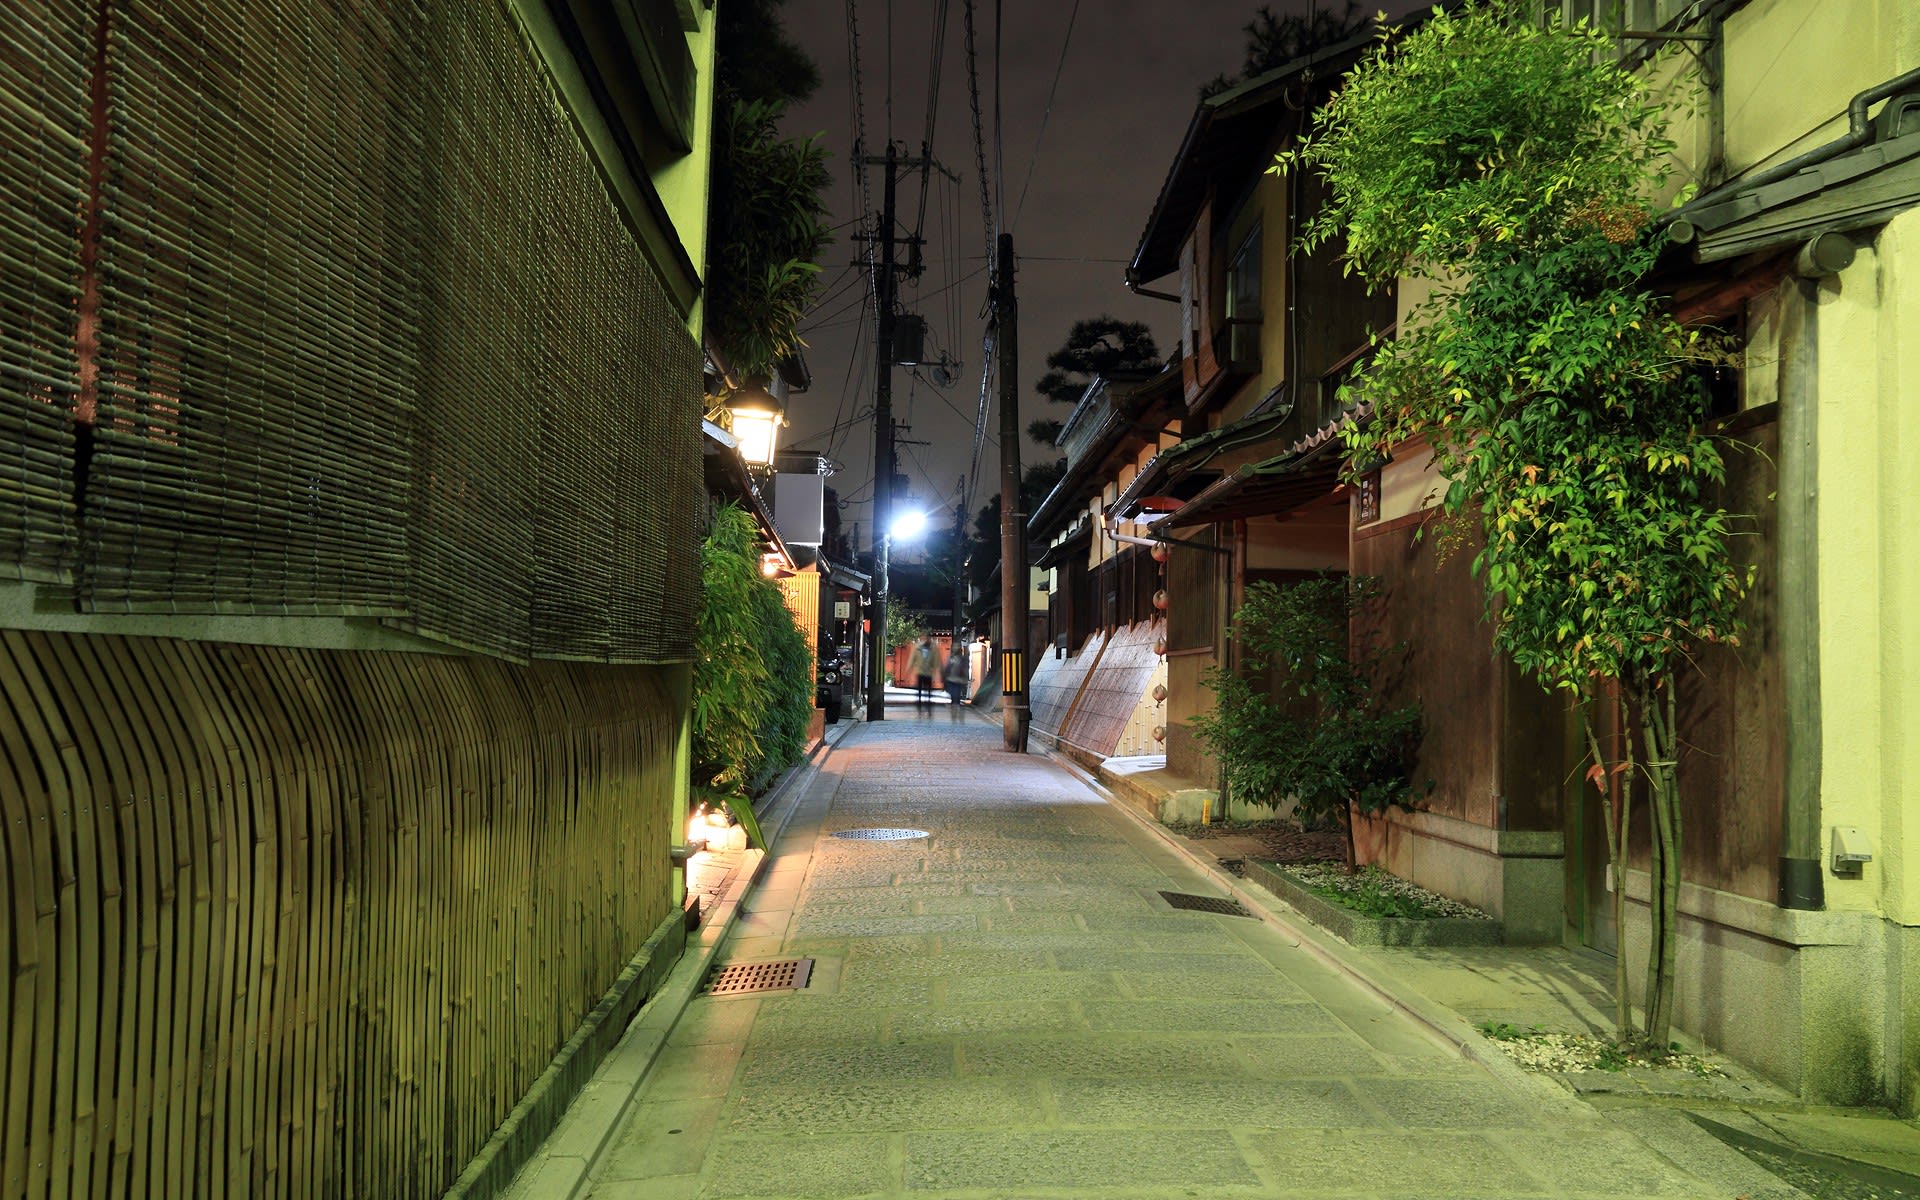 夜の京都 八坂の塔の壁紙 計10枚 壁紙 日々駄文